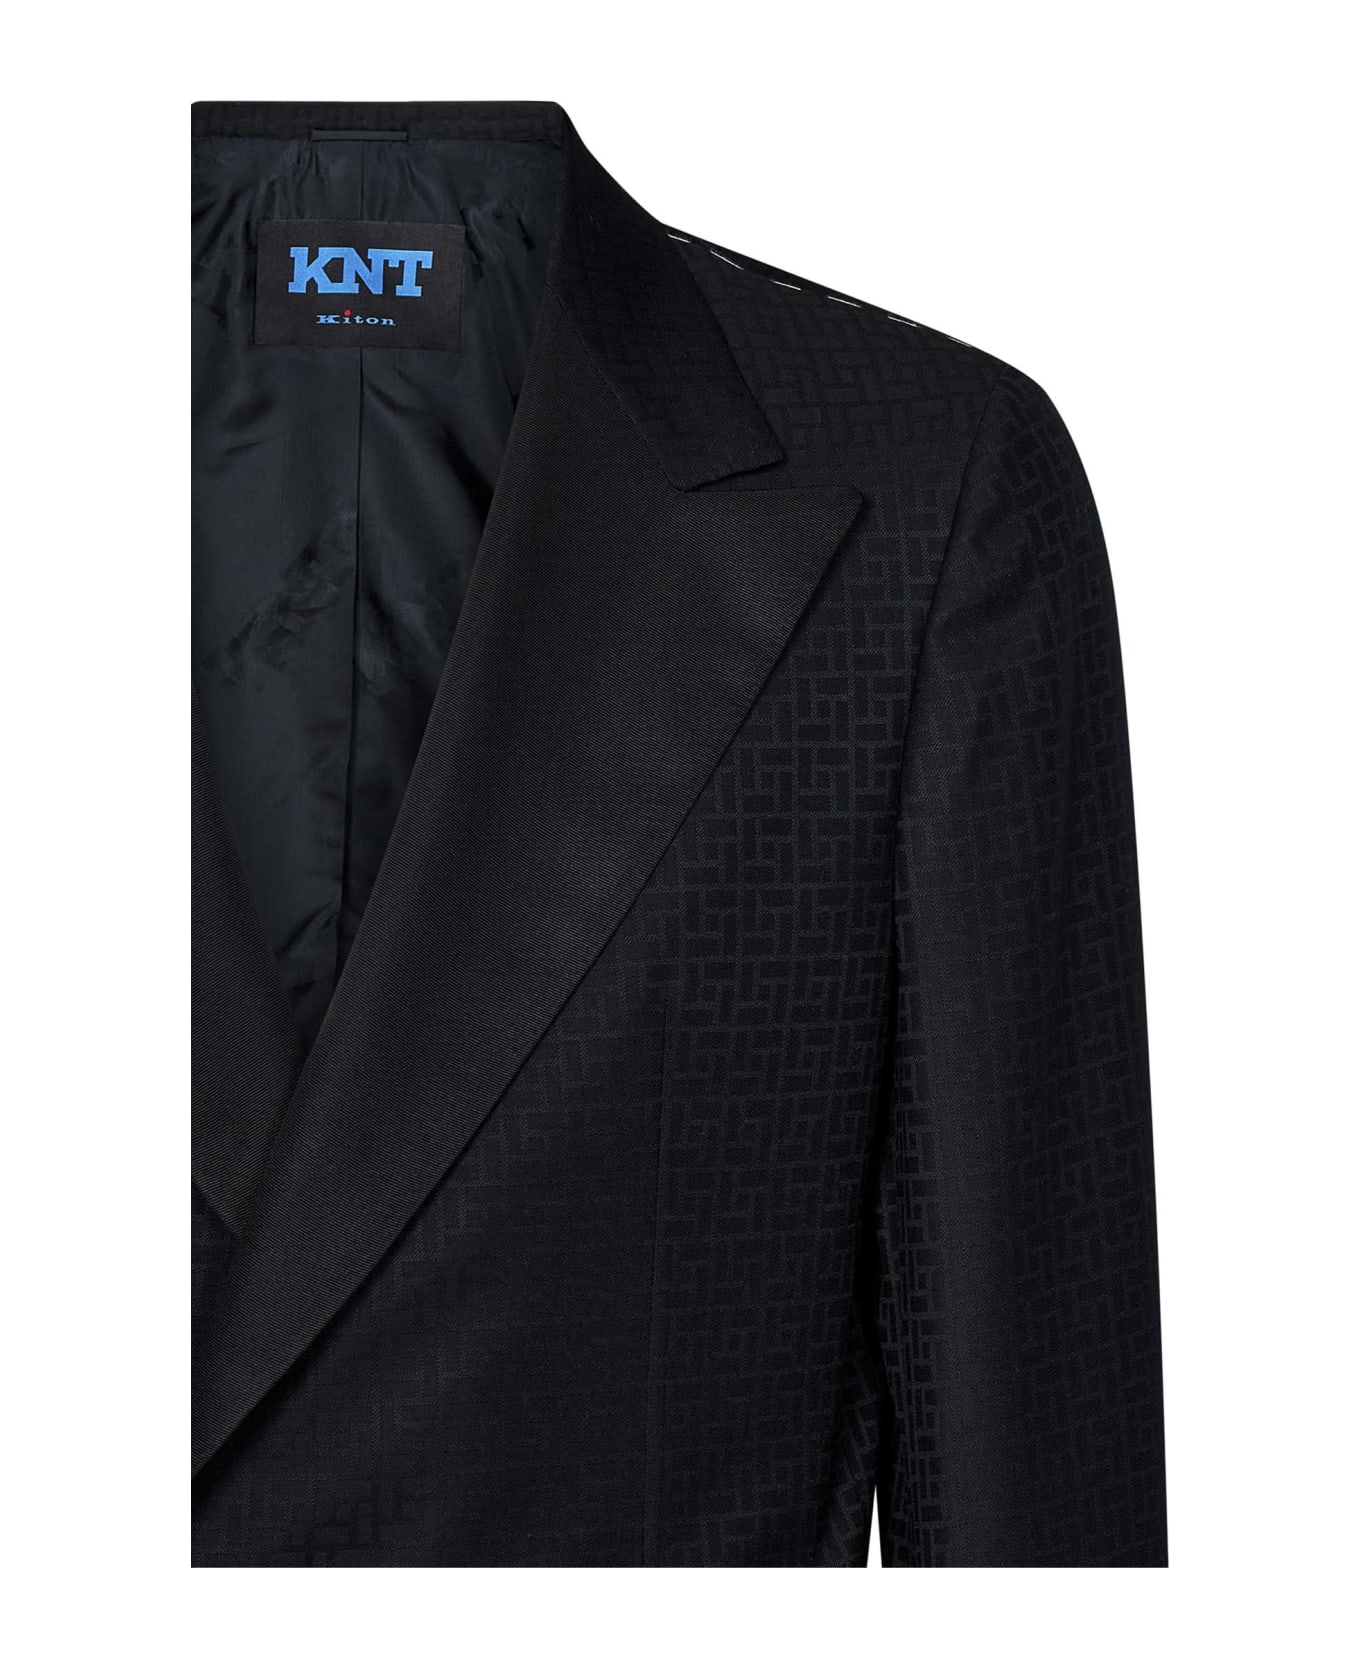 Kiton 'double' Blazer - Black スーツ